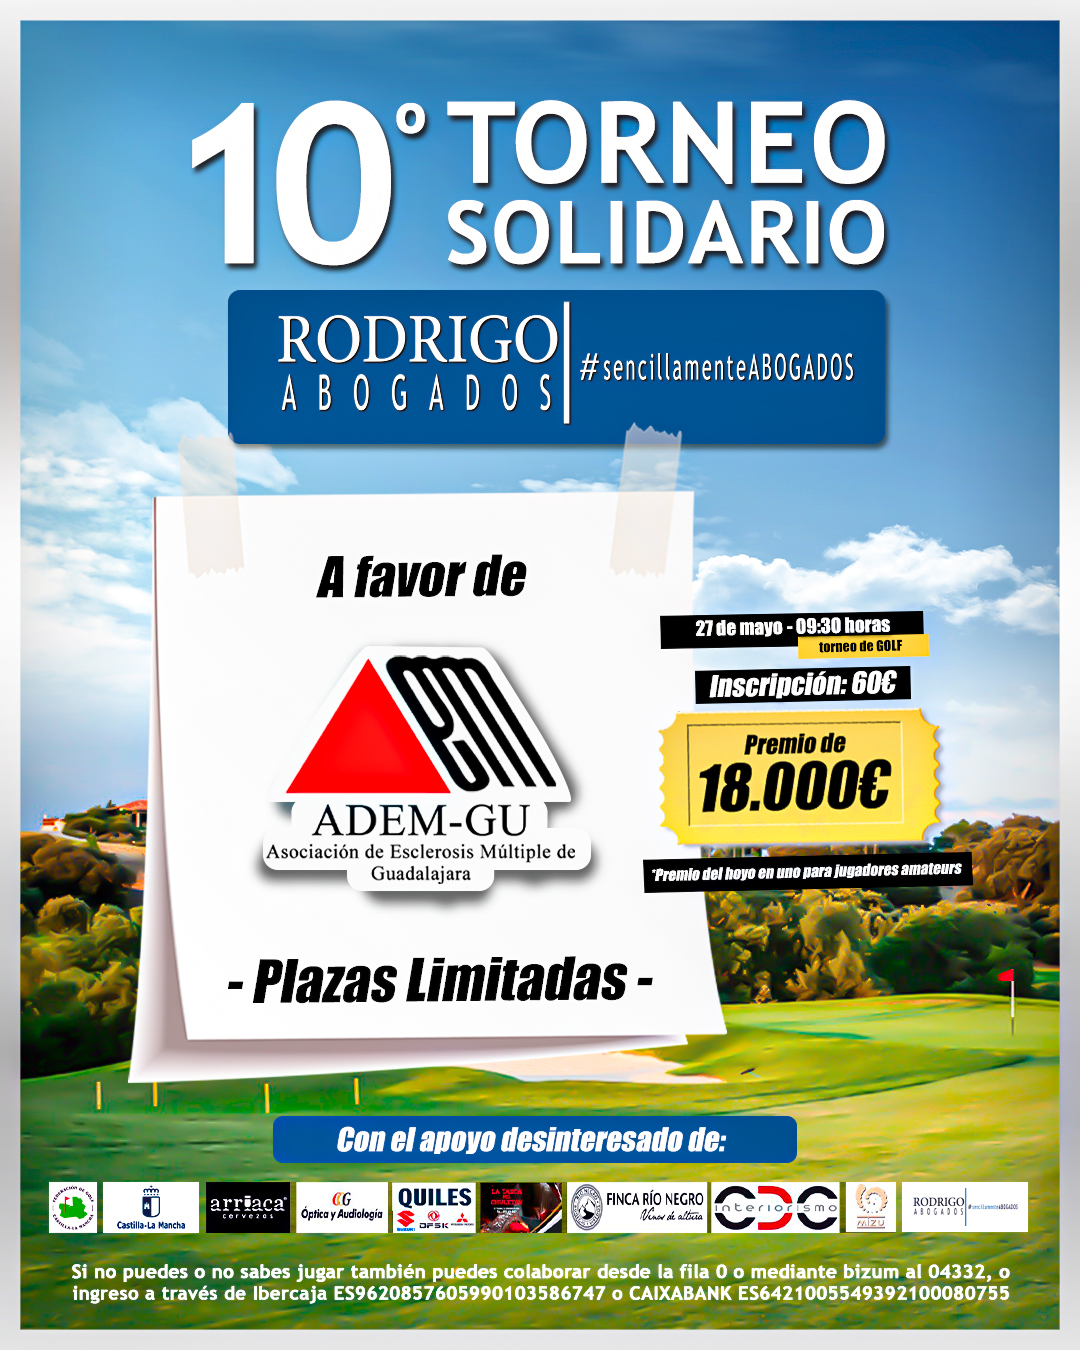 X Torneo Solidario de Golf Rodrigo Abogados en apoyo a la Asociación de Esclerosis Múltiple de Guadalajara 